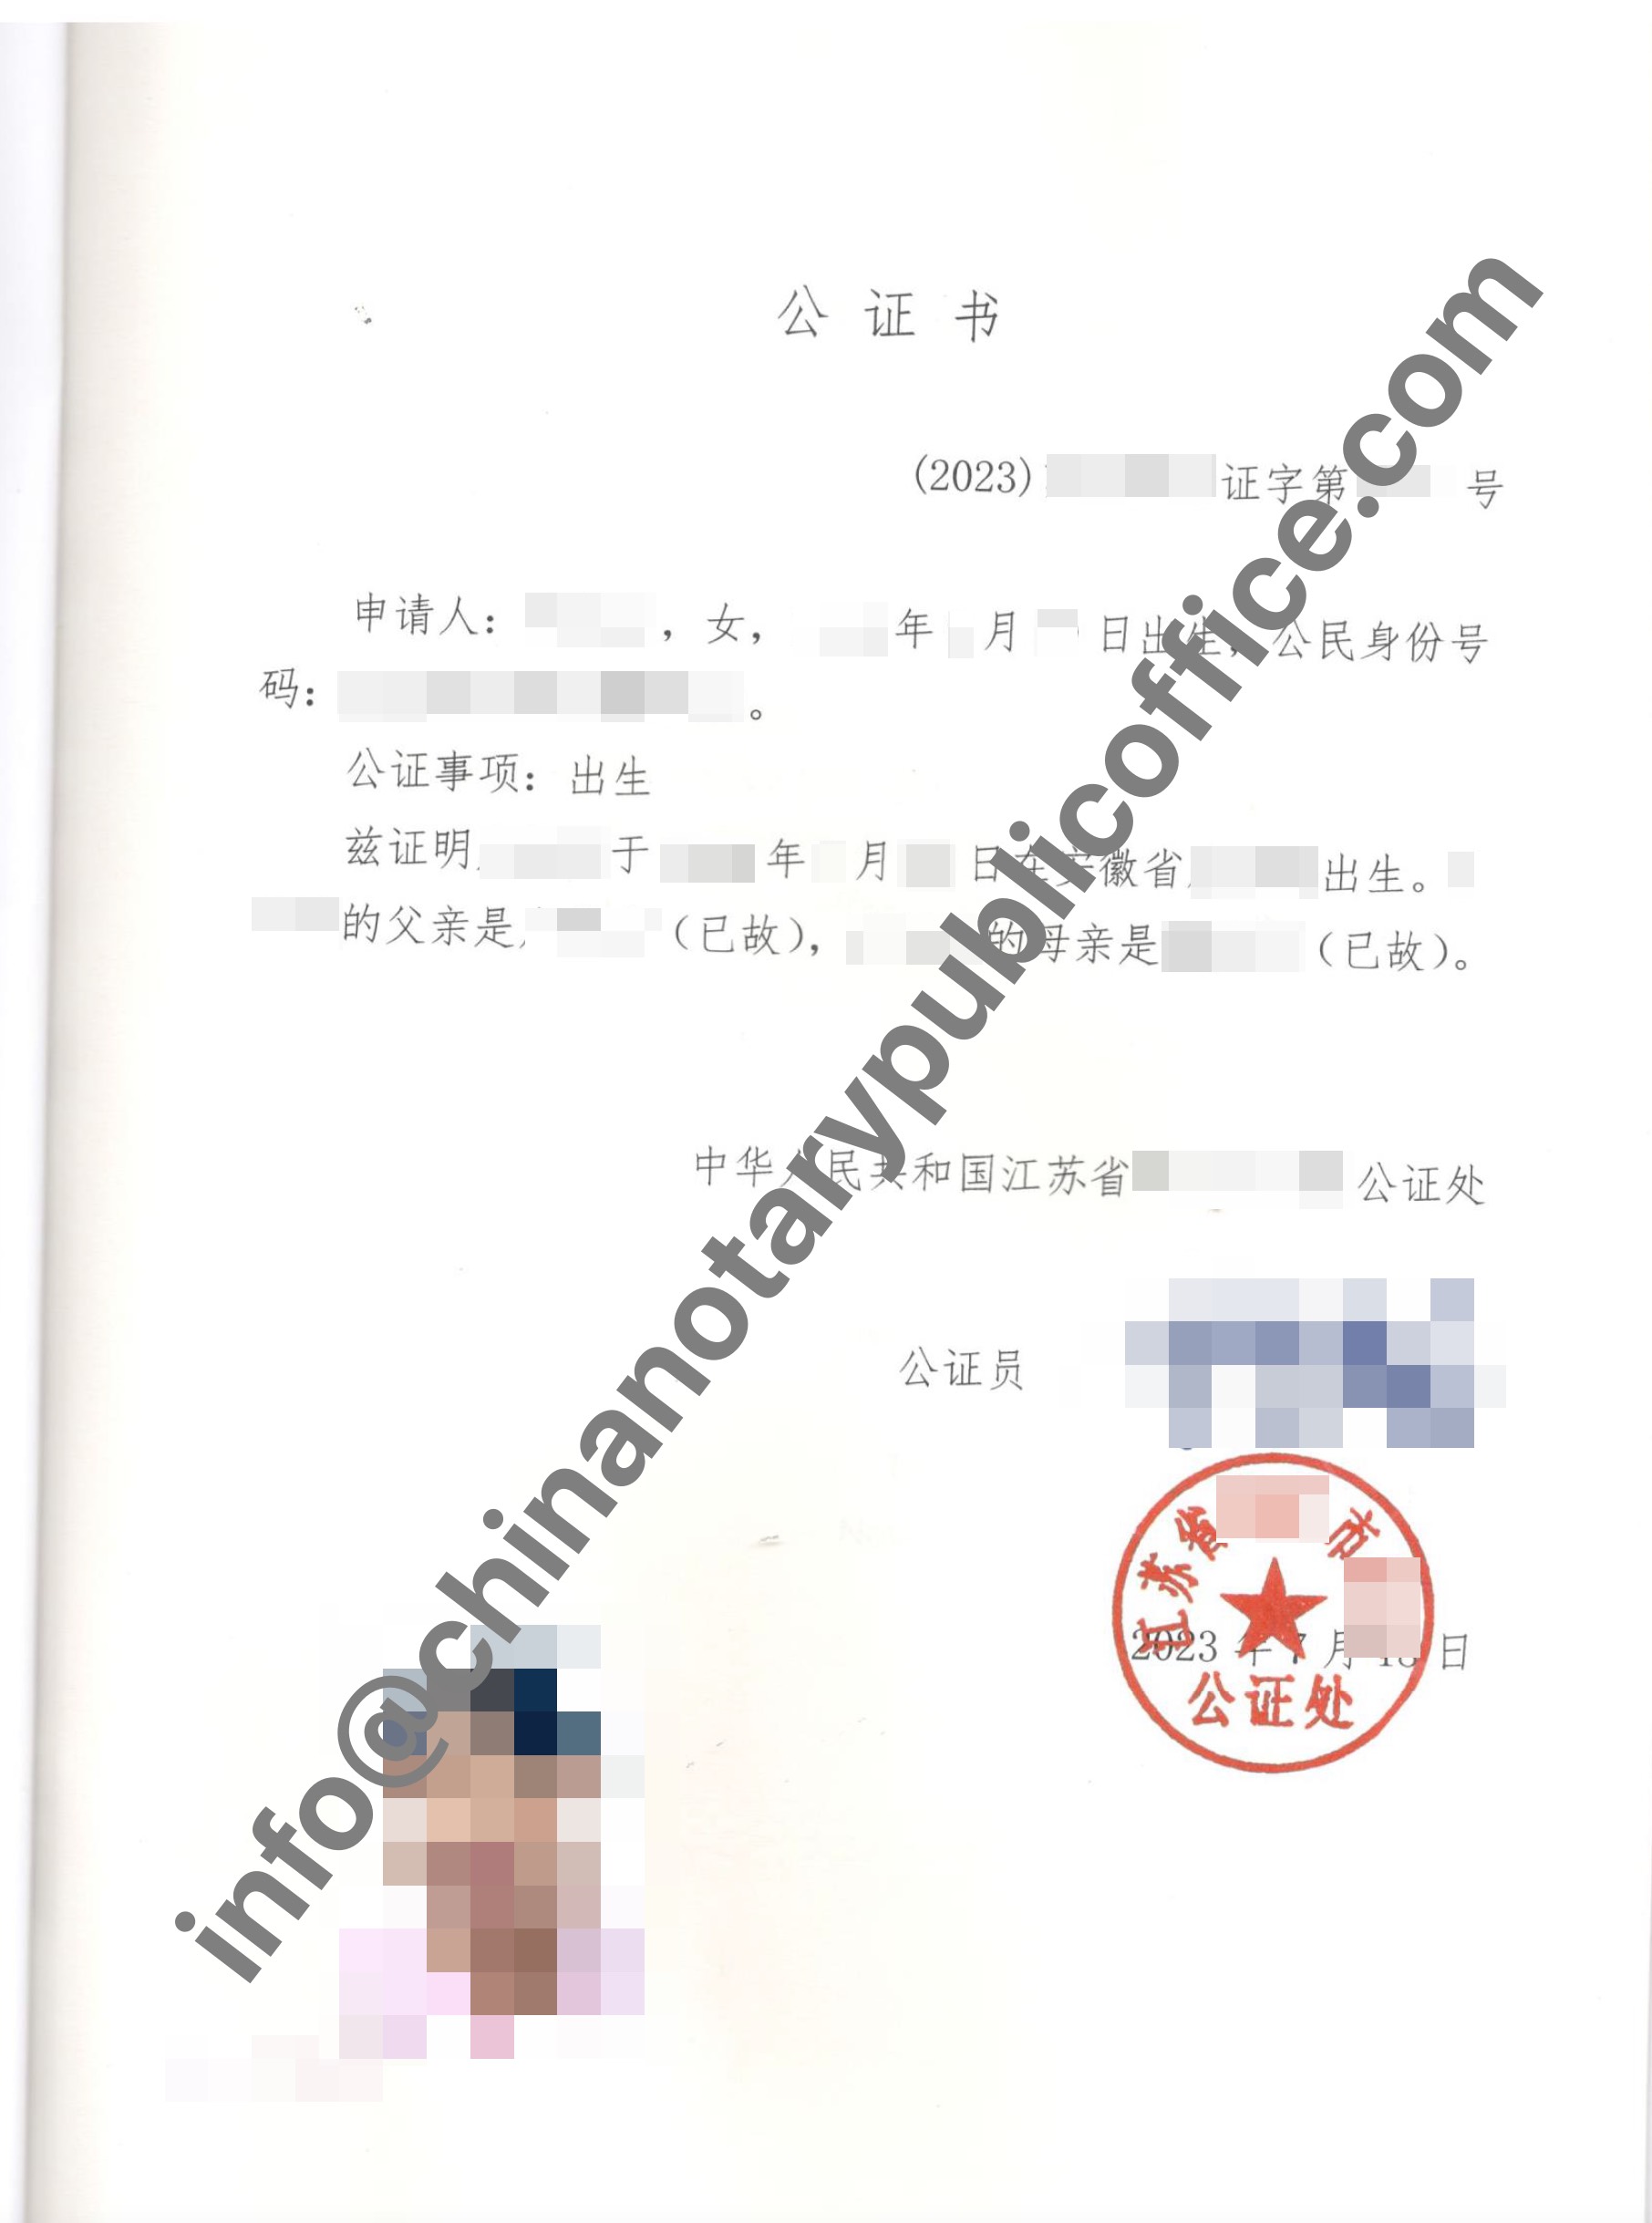 如何为父母或者老年人办理出生公证书？，中国公证处海外服务中心